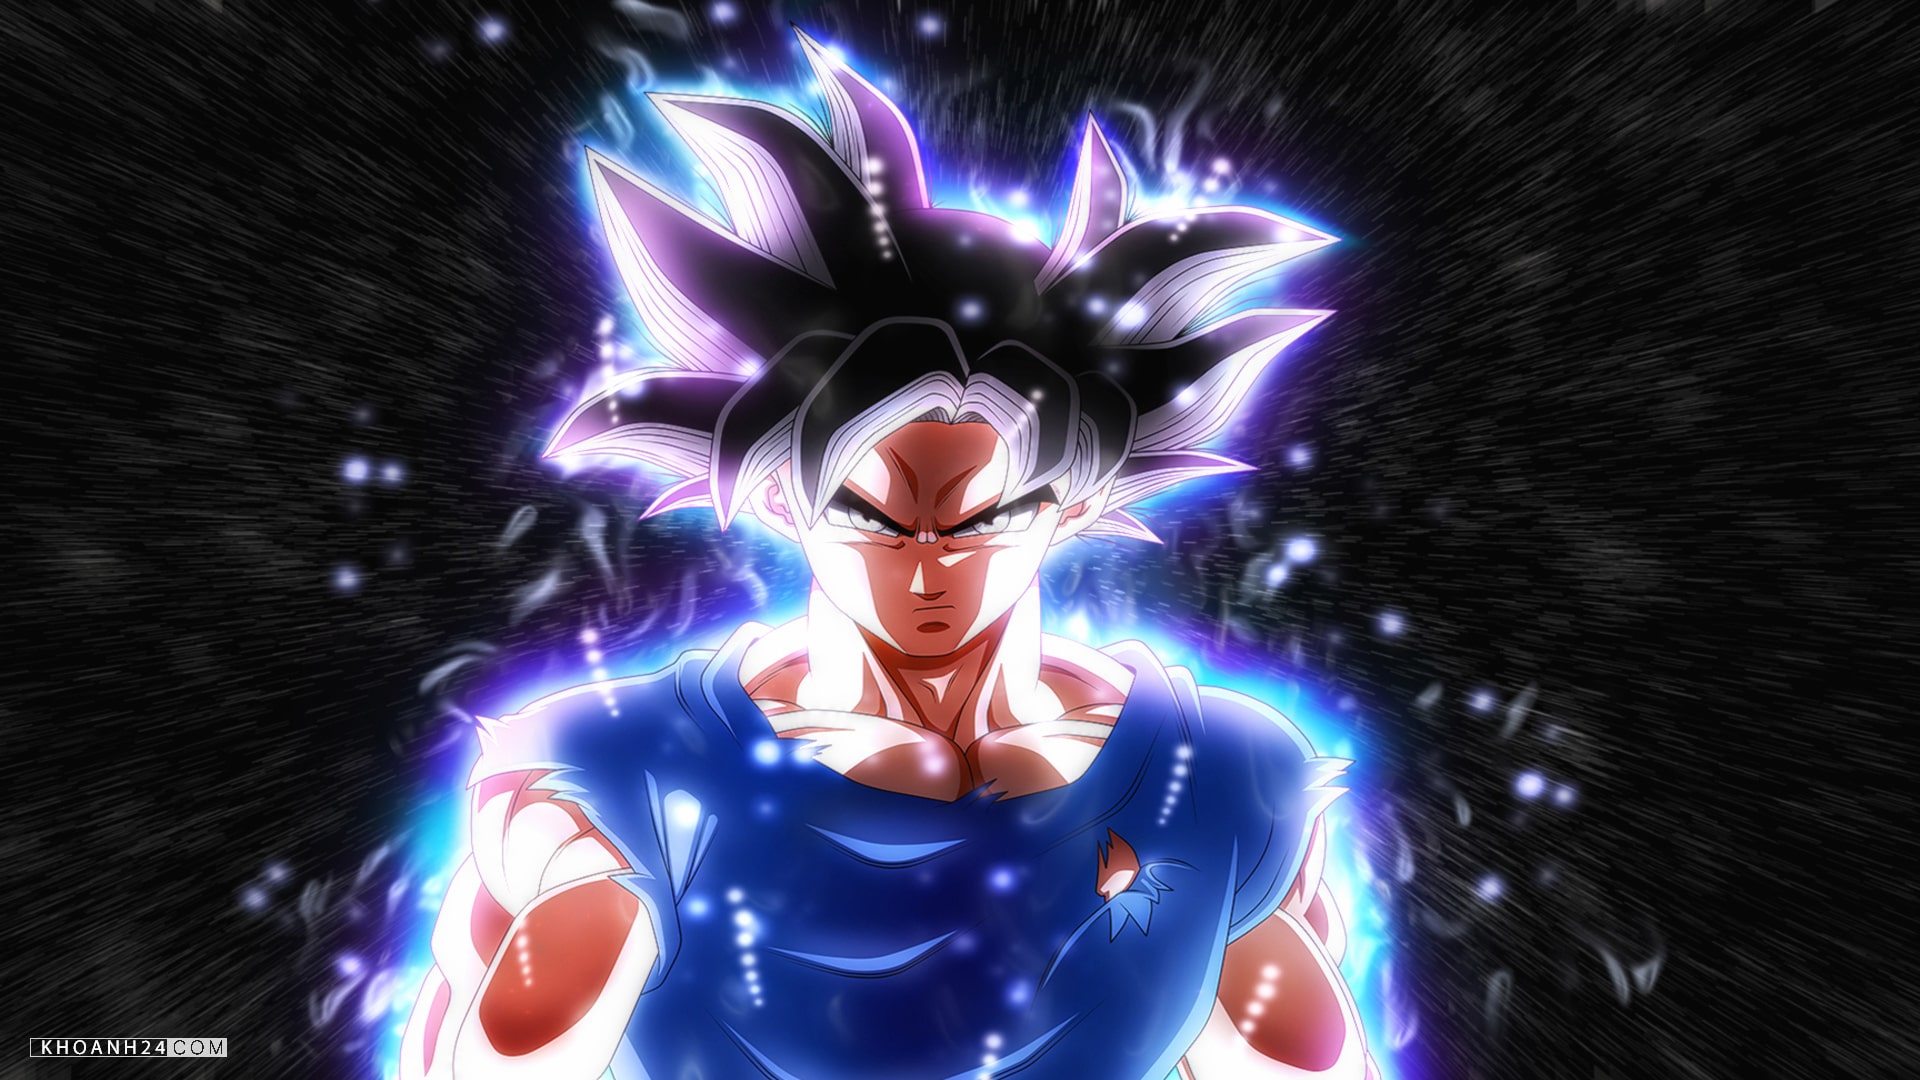 Tải Hình Ảnh Dragon Ball Super Son Goku Ultra Instinct 6 Min5Bbdcaef80143  Tại Kho Hình Nền, Ảnh Đẹp Khoanh24.Com